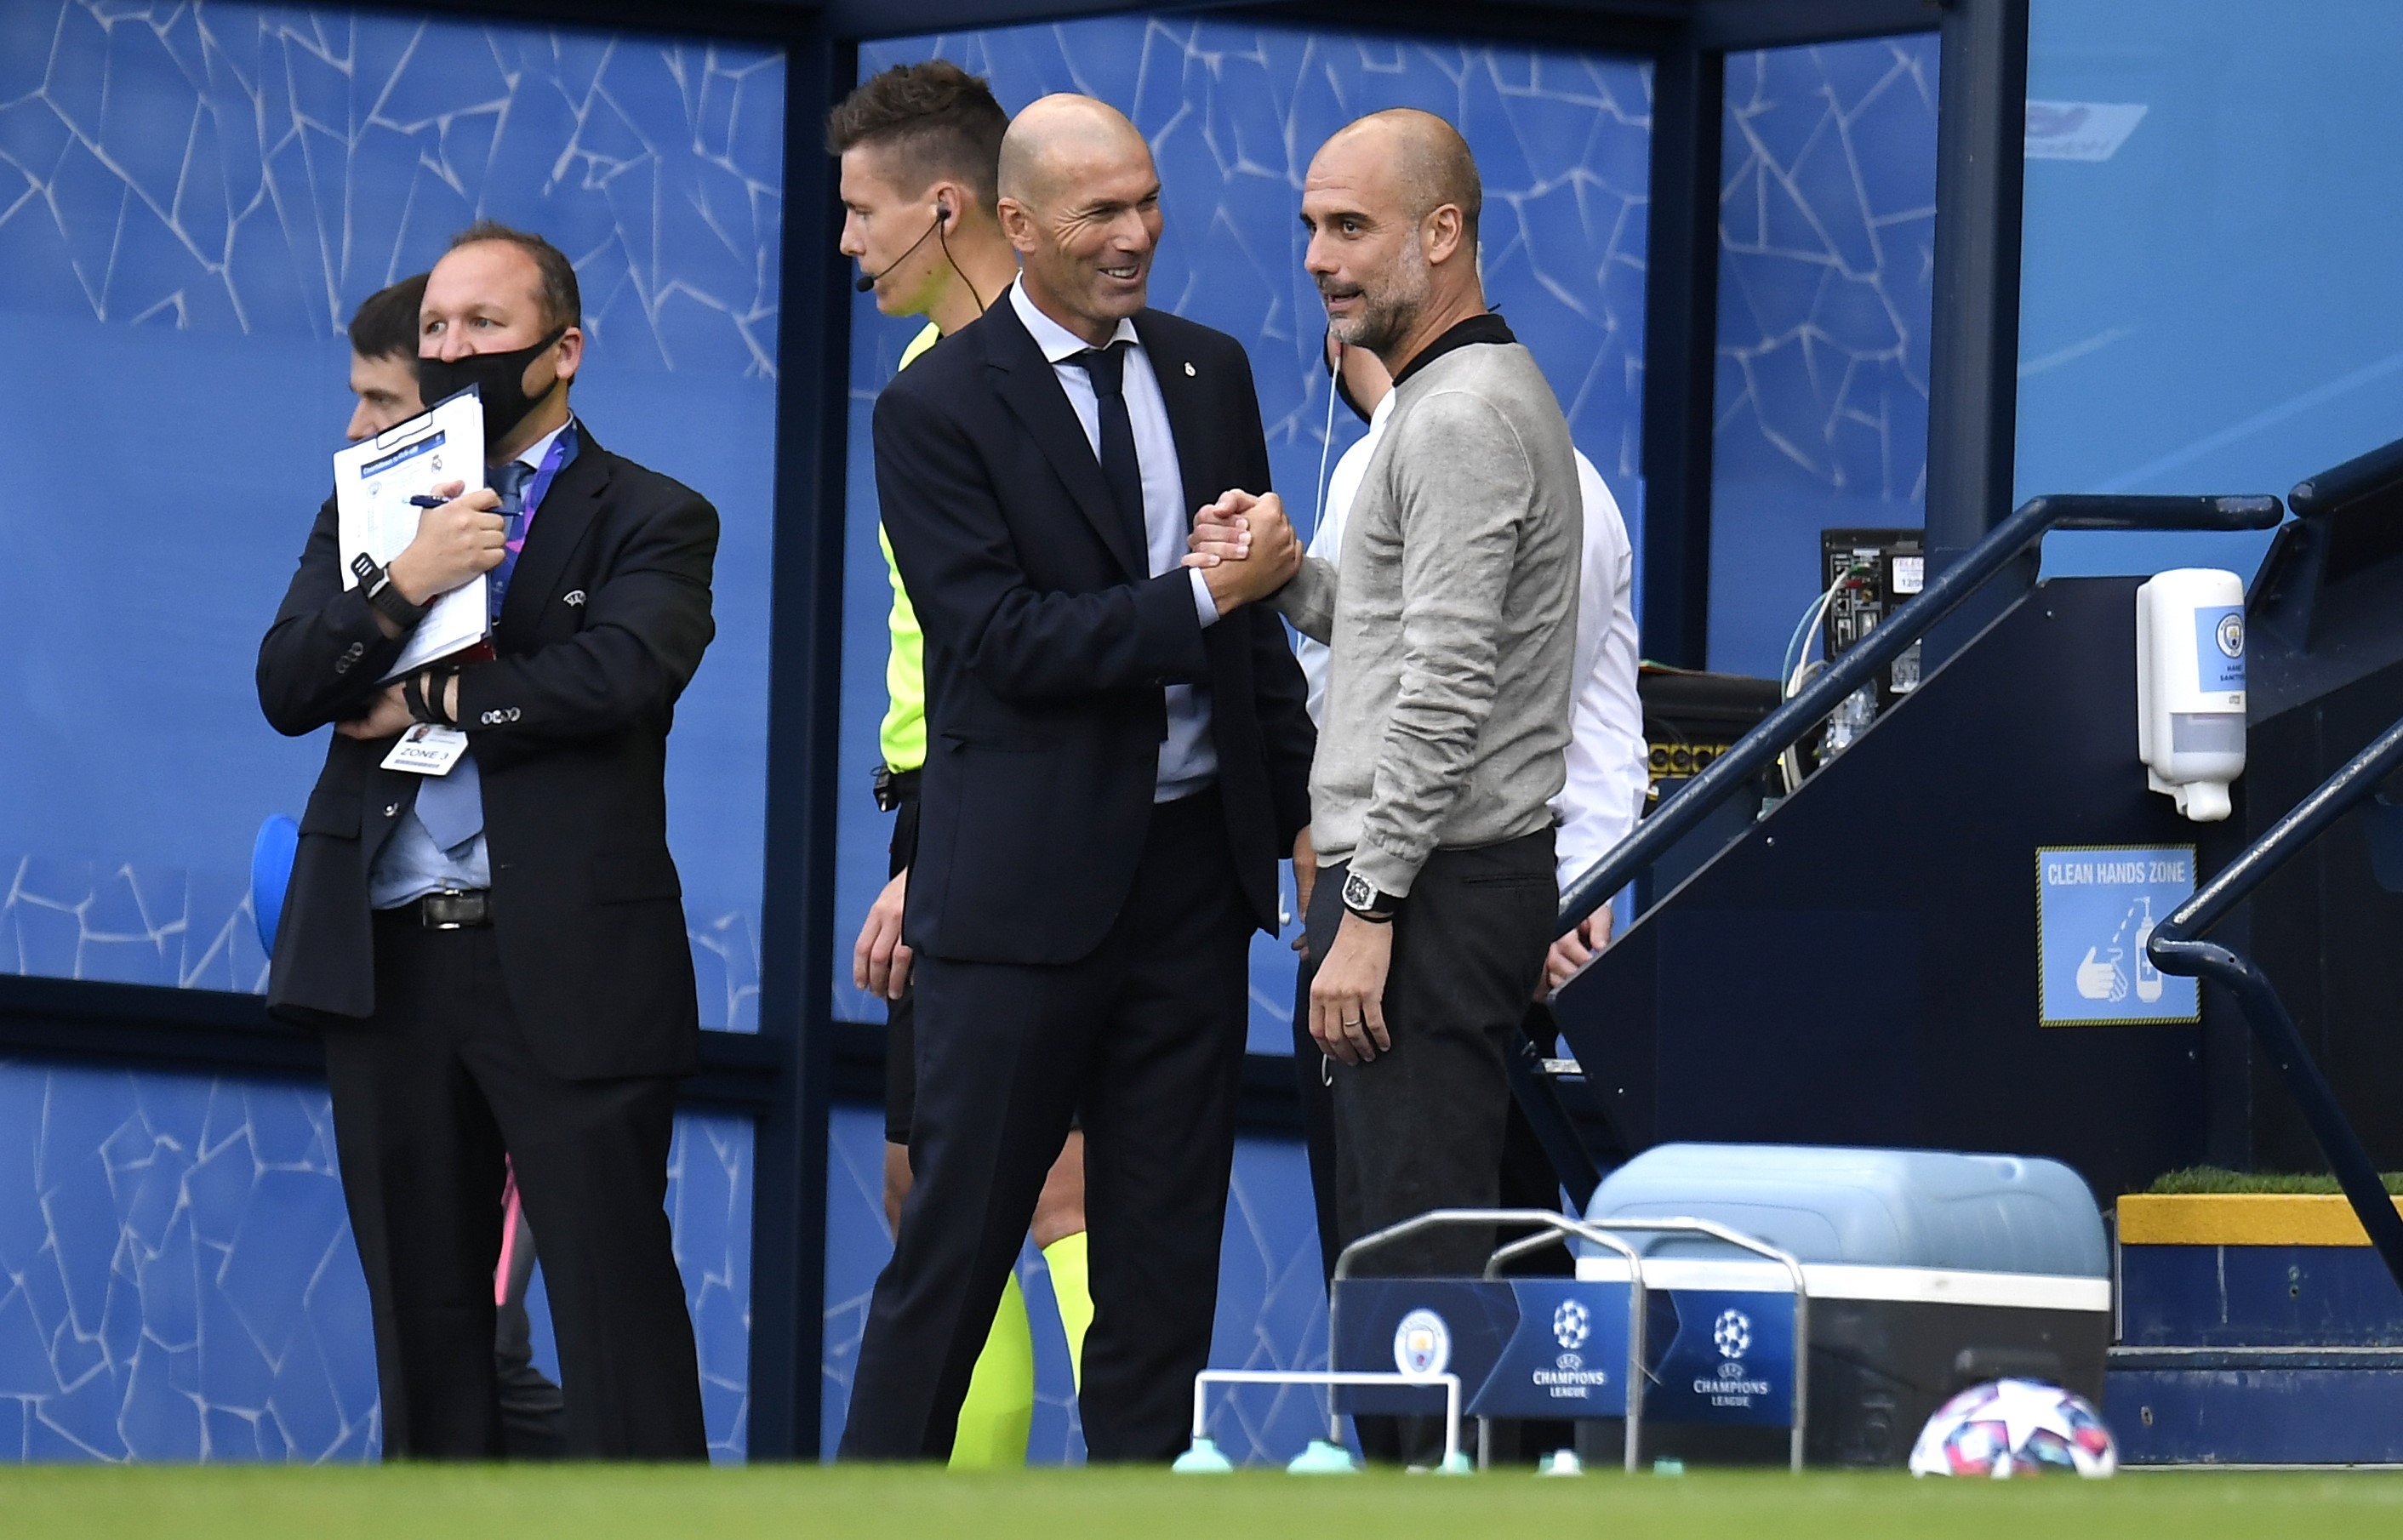 La imatge del dia: la segona lliçó de Guardiola a Zidane que poc s'ha vist